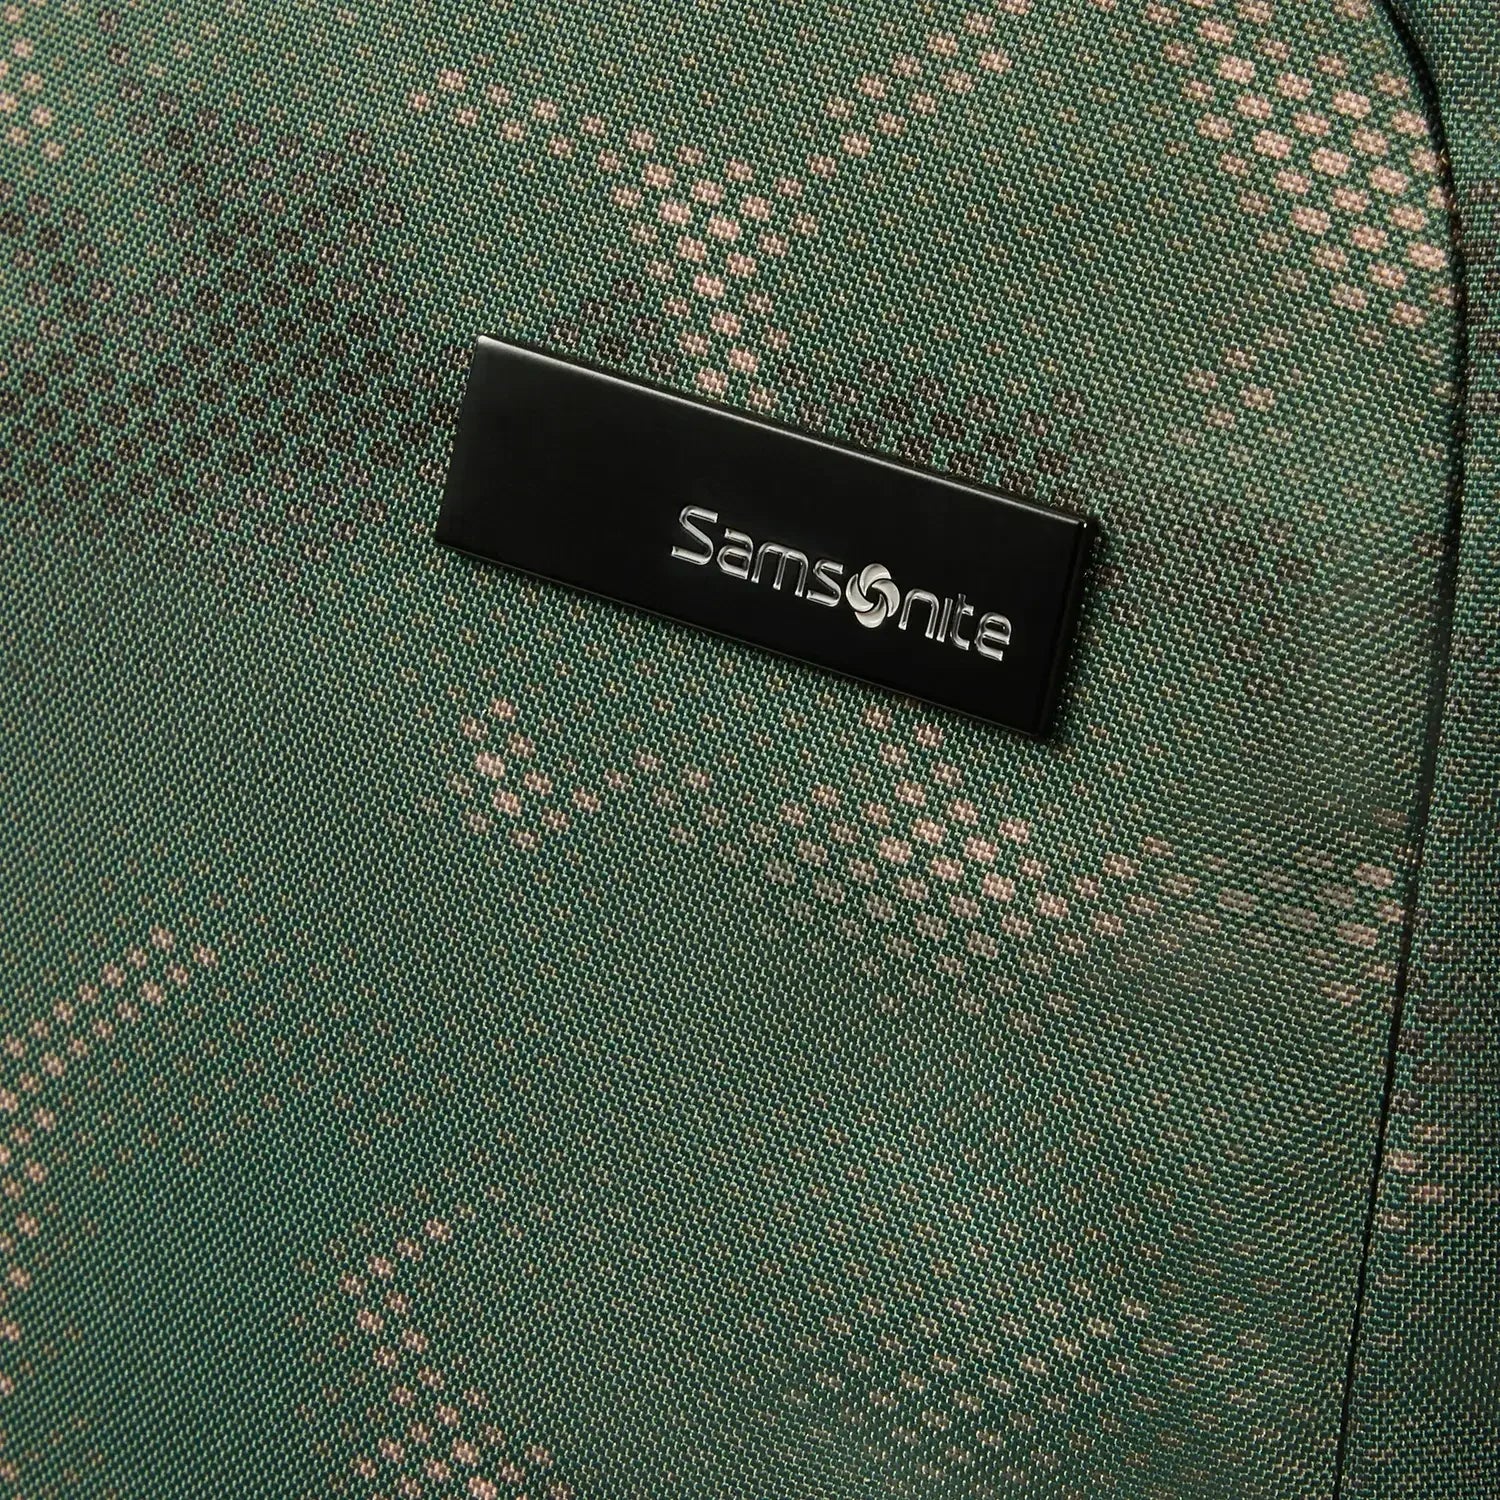 Samsonite Roader Laptop Backpack M 44 cm - olive green